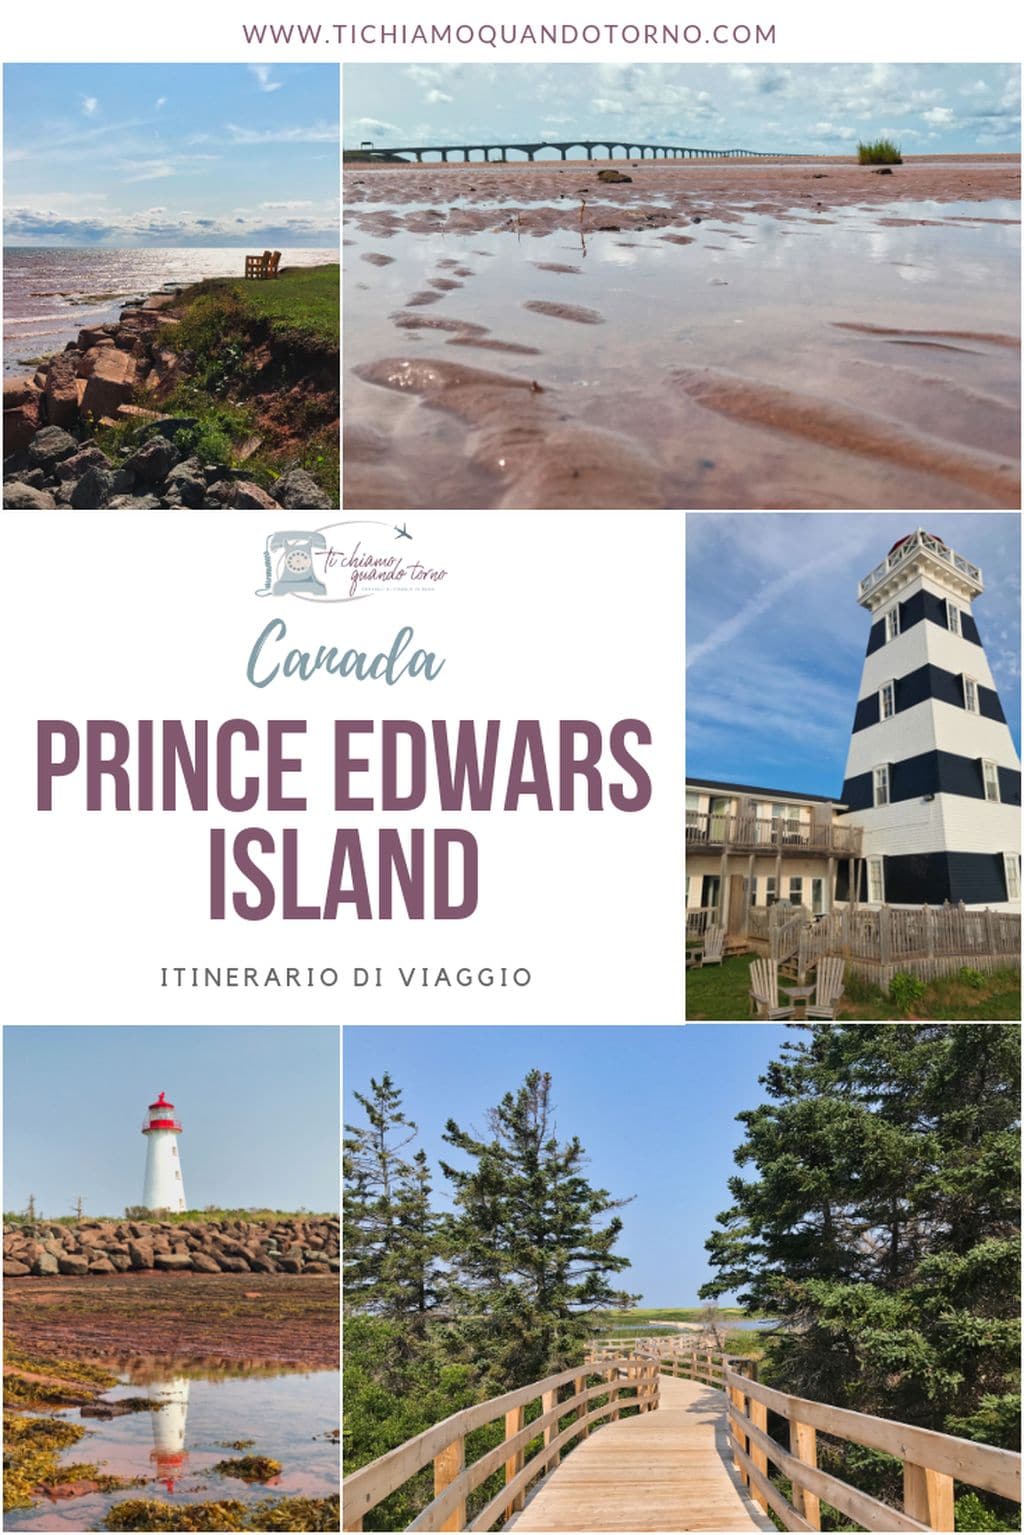 Prince Edward Island itinerario di viaggio